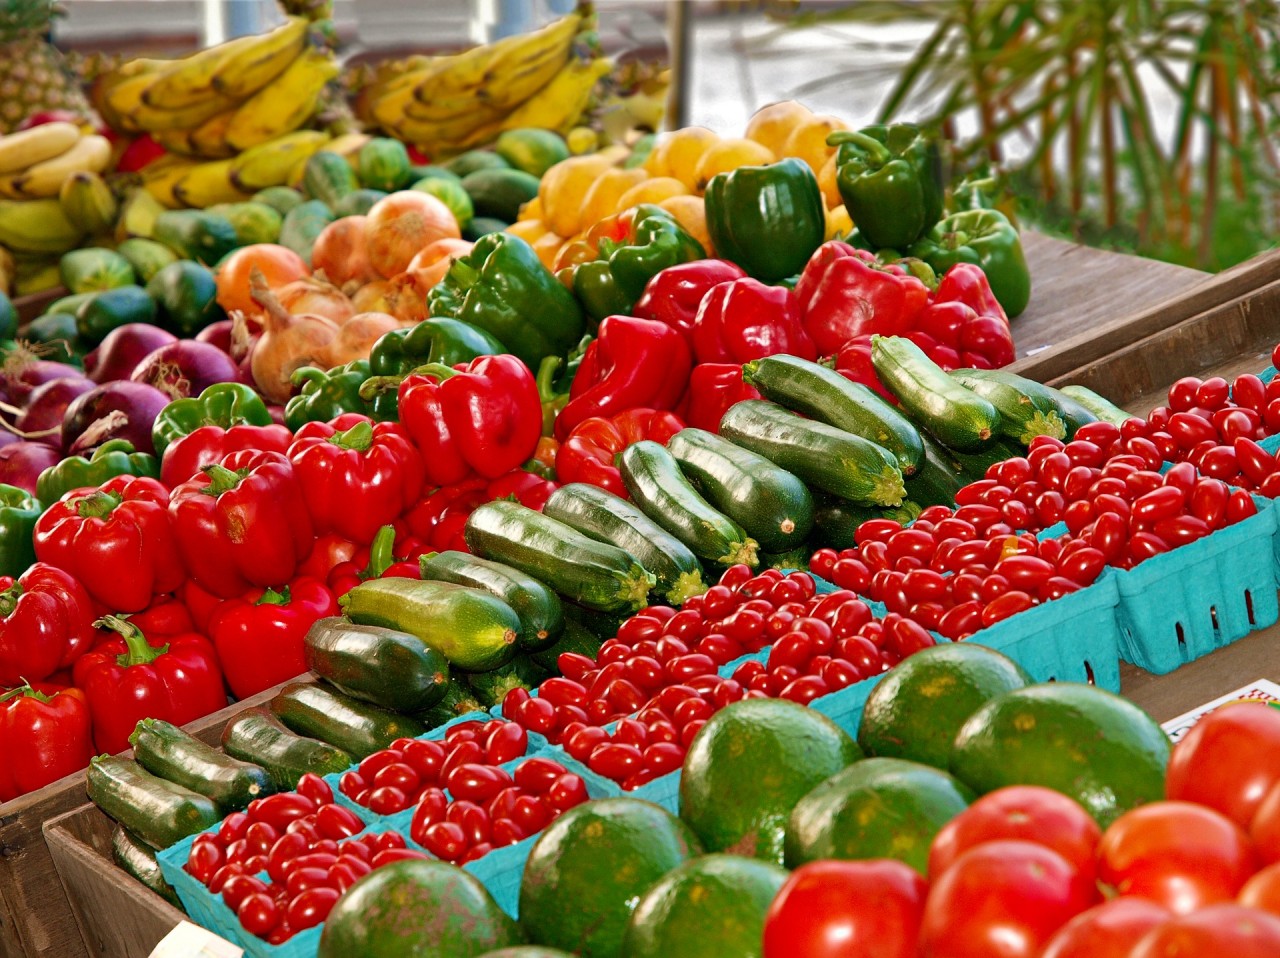 ec361c1a0282e6899a9b066ee04f6124 - Preços das verduras variam 287,25% nos supermercados e feiras de João Pessoa